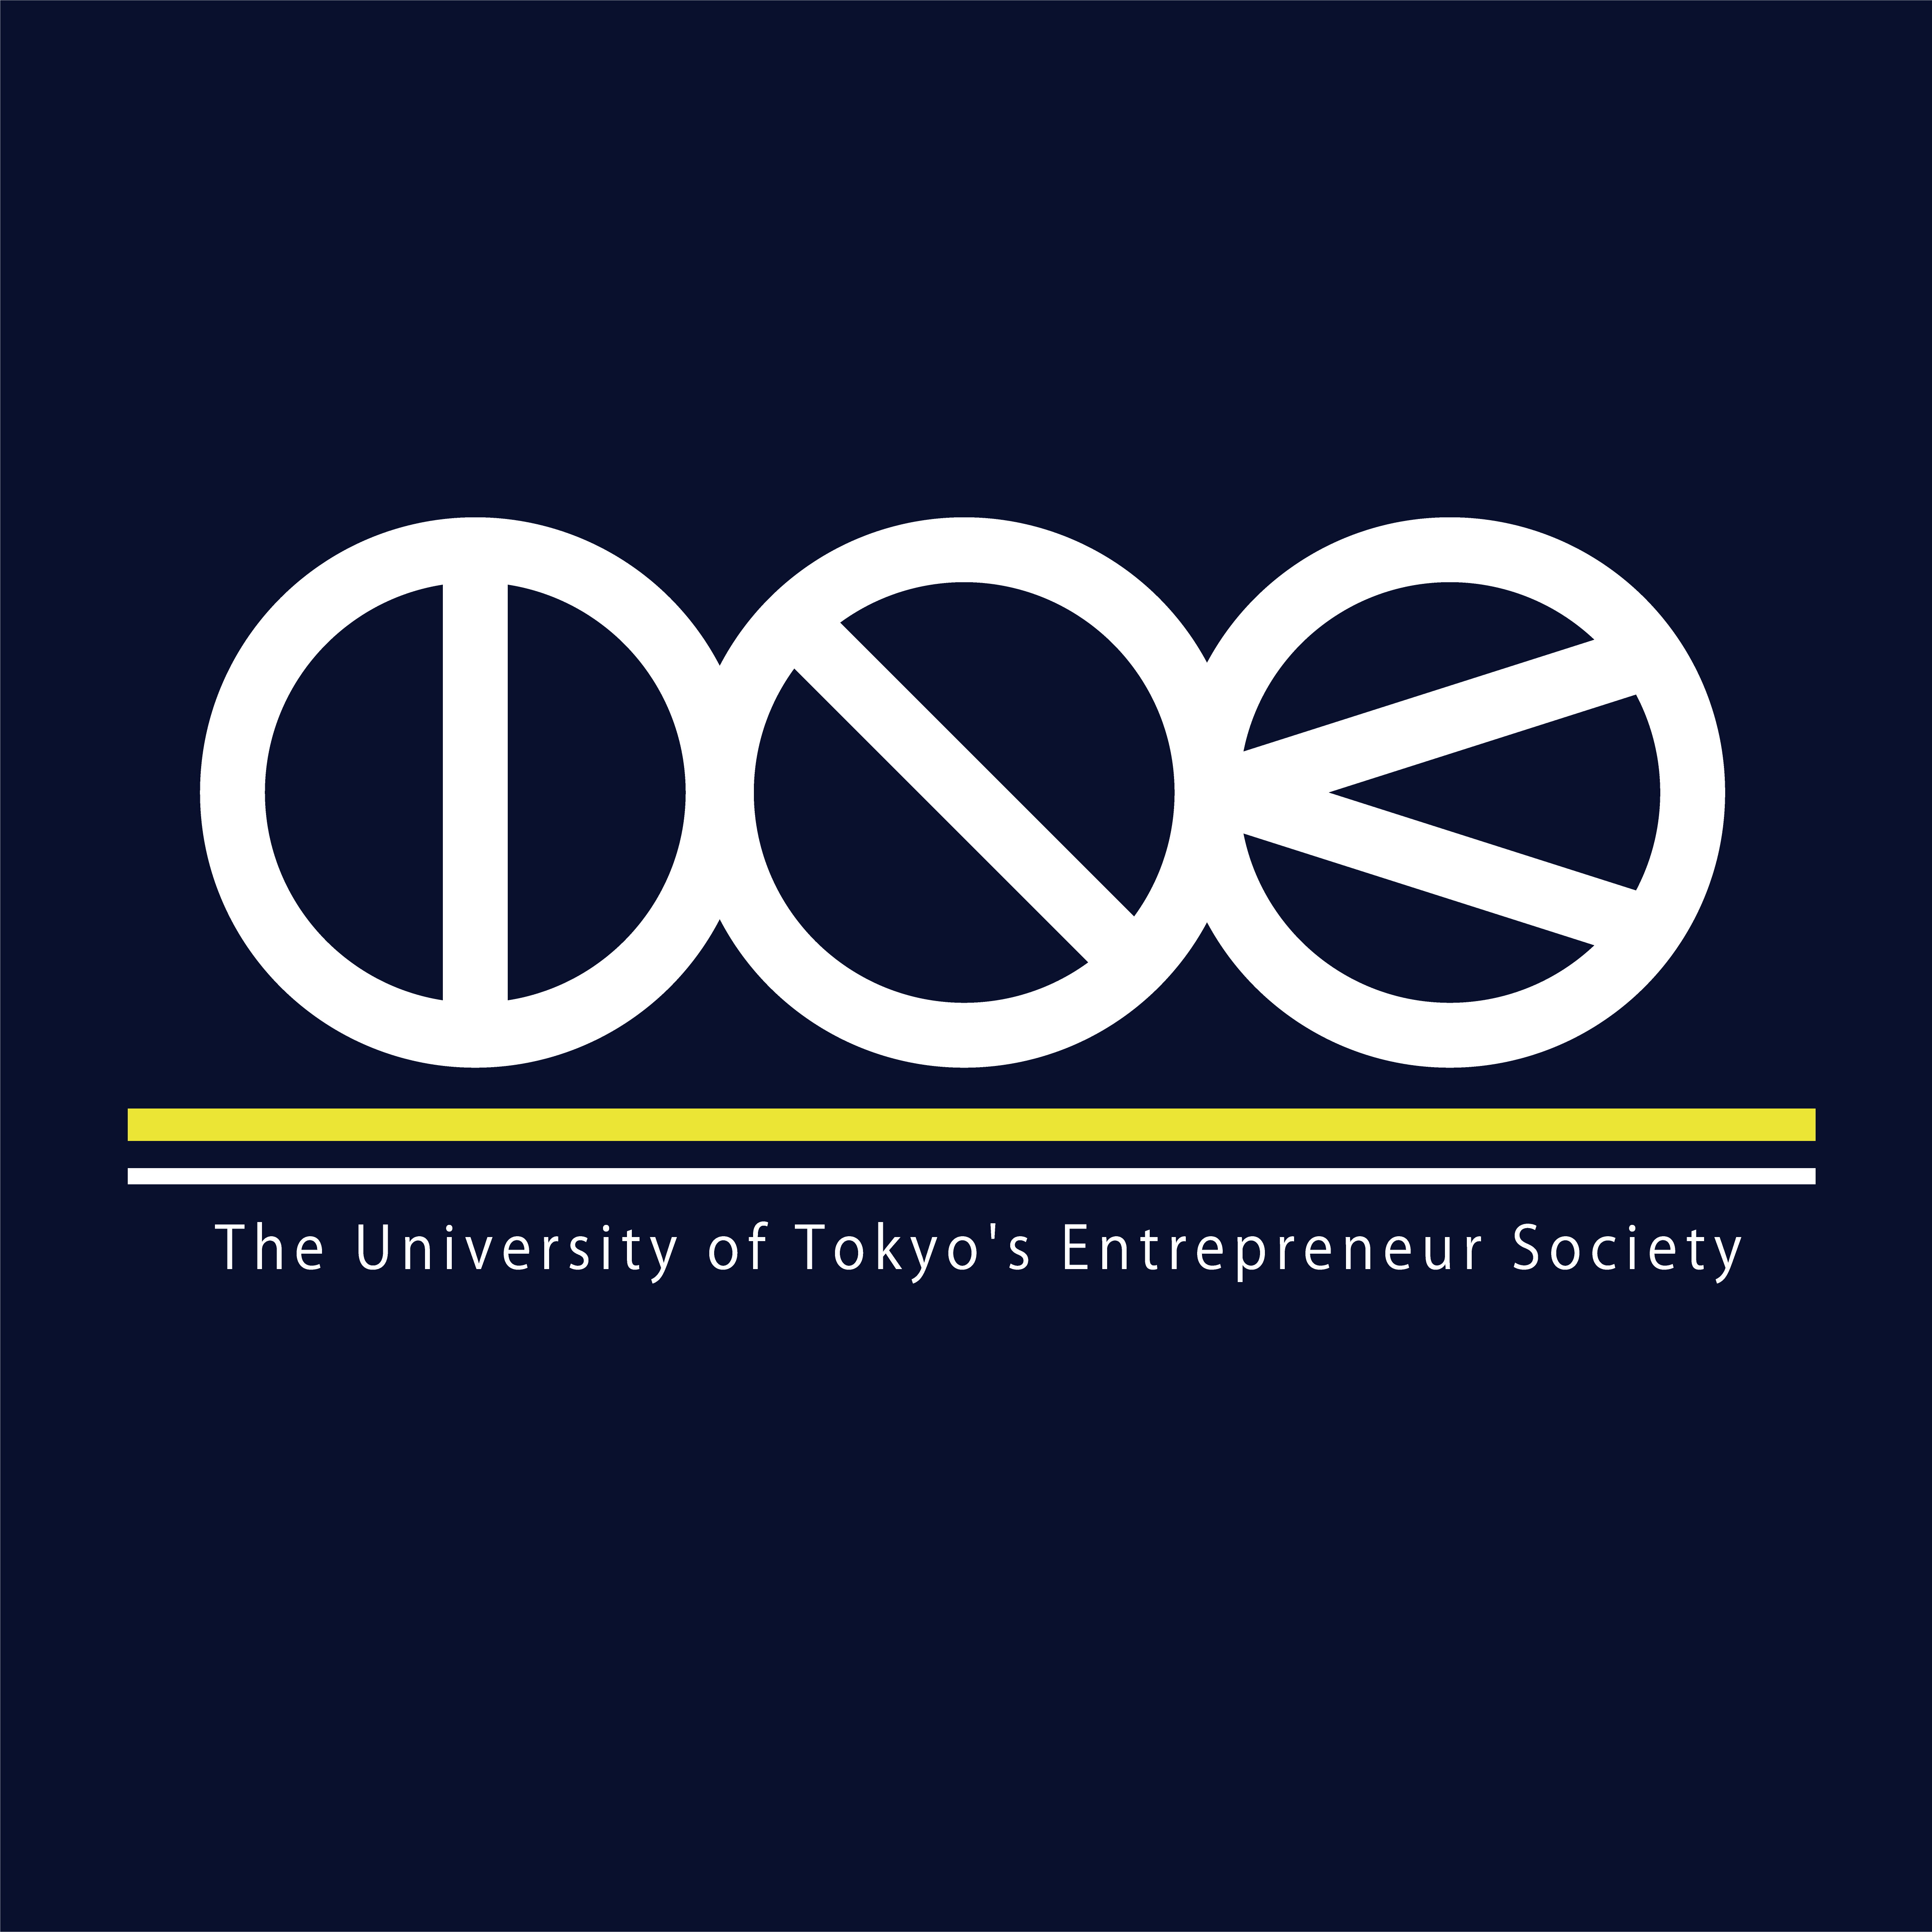 日本最大最強の学生起業家集団。経団連を超える経済団体を目指す。2005年に設立、これまでに80名以上の起業家を輩出。100億円以上での売却１名、IPOした創業社長１名、10億円以上での売却５名、３億円以上での売却は15名以上。